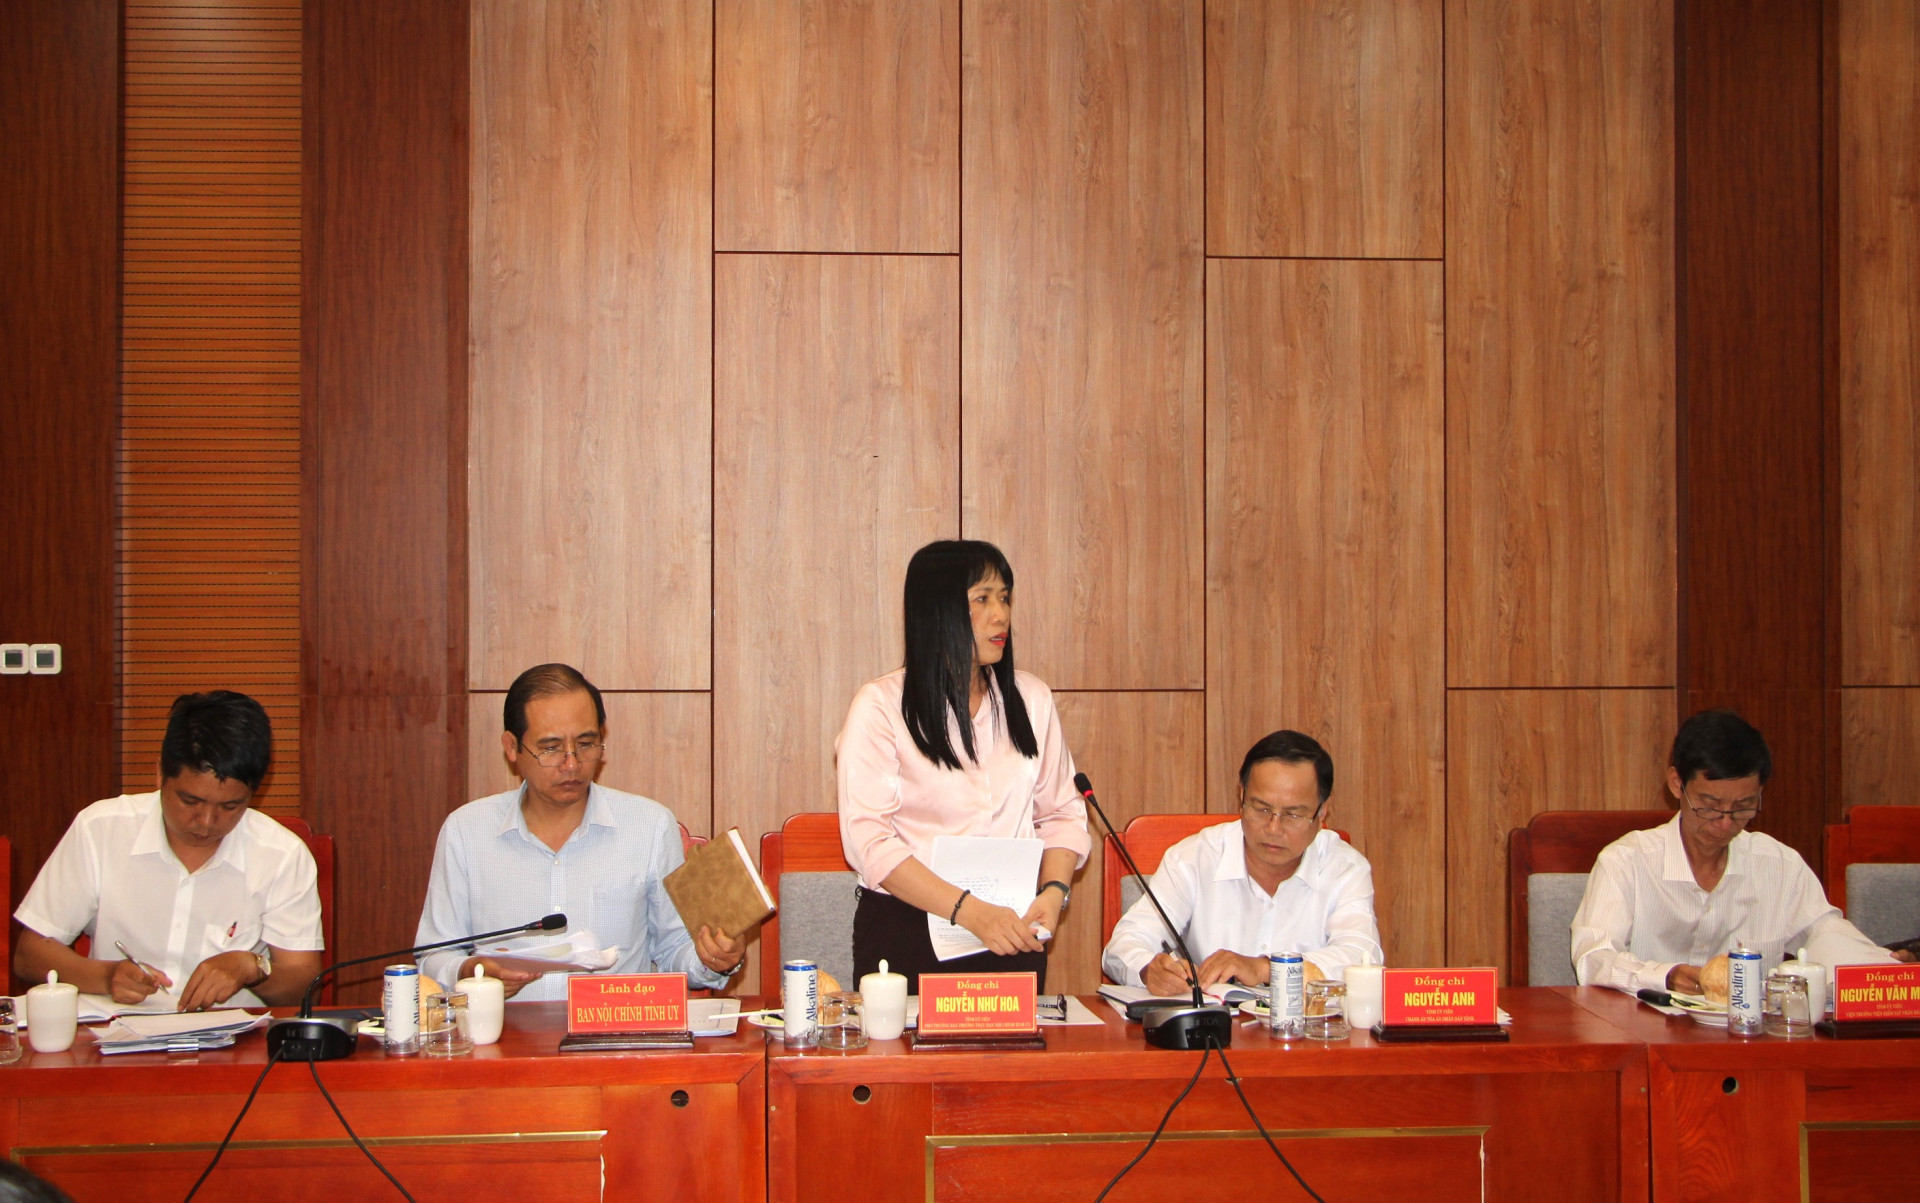 Đồng chí Nguyễn Như Hoa - Phó Trưởng ban Thường trực Ban Nội chính Tỉnh ủy báo cáo.